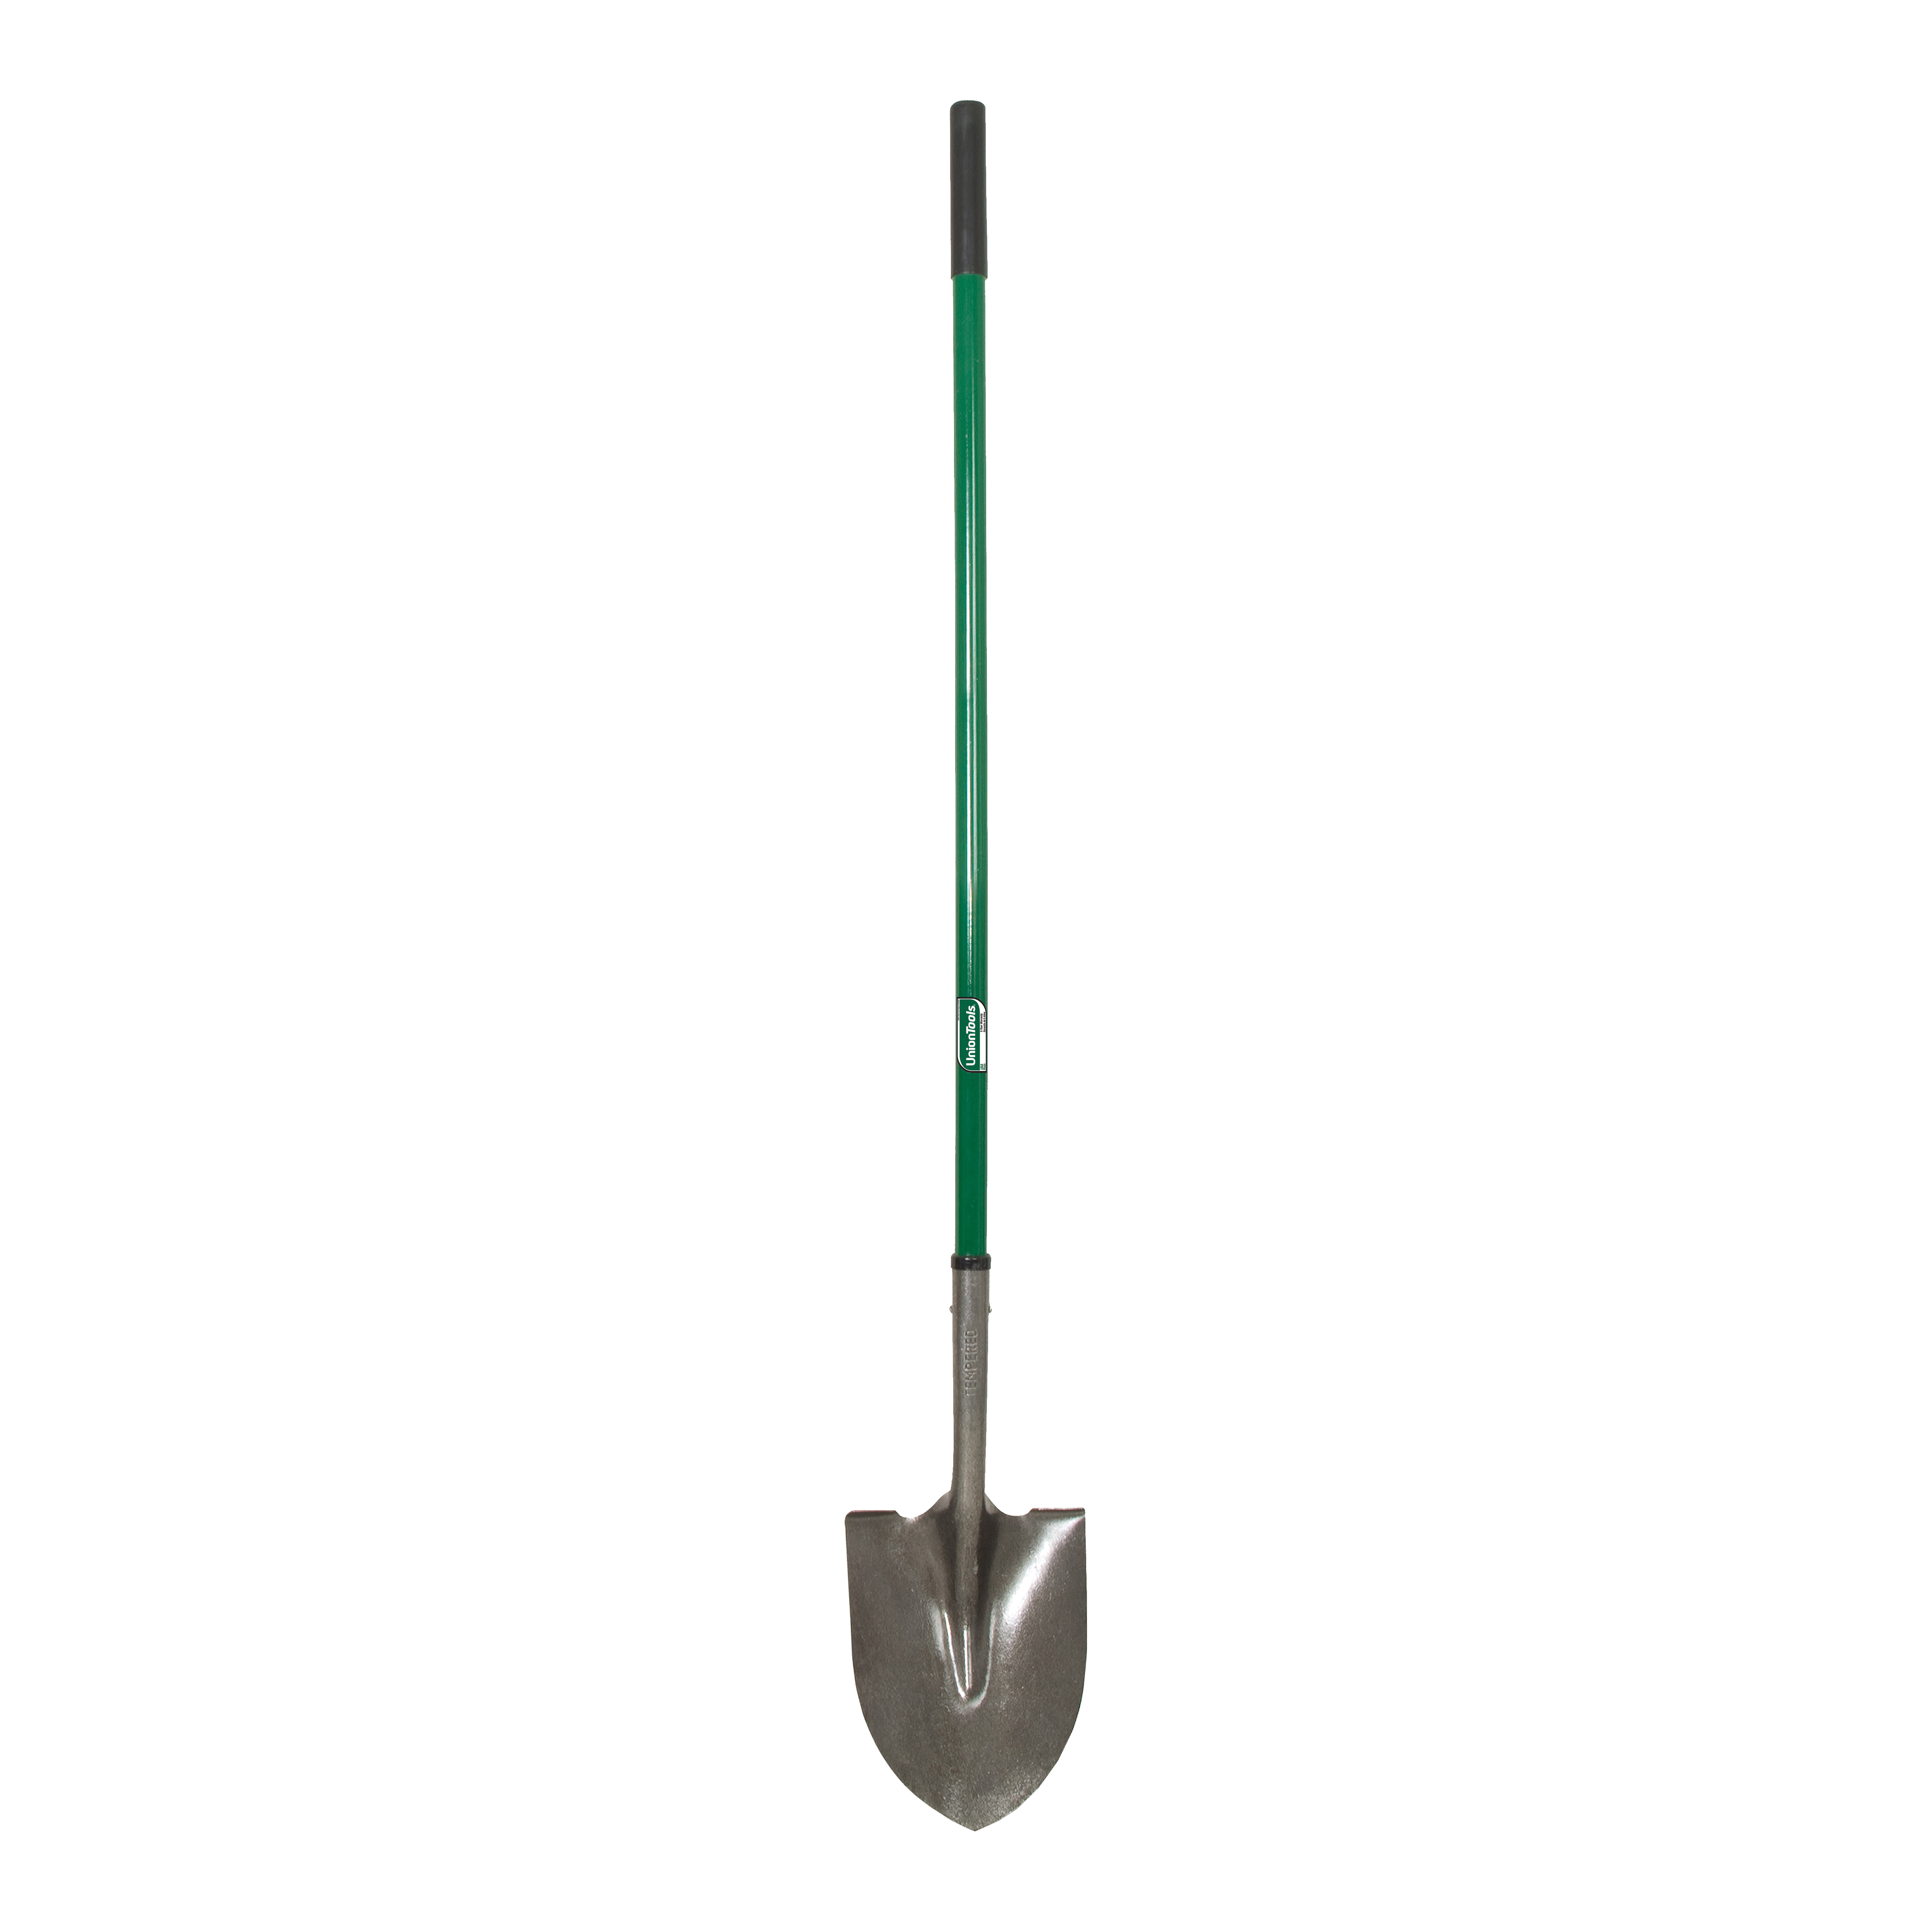 2430900 Shovel, 8.61 in W Blade, 16 ga Gauge, Steel Blade, Fiberglass Handle, Long Handle